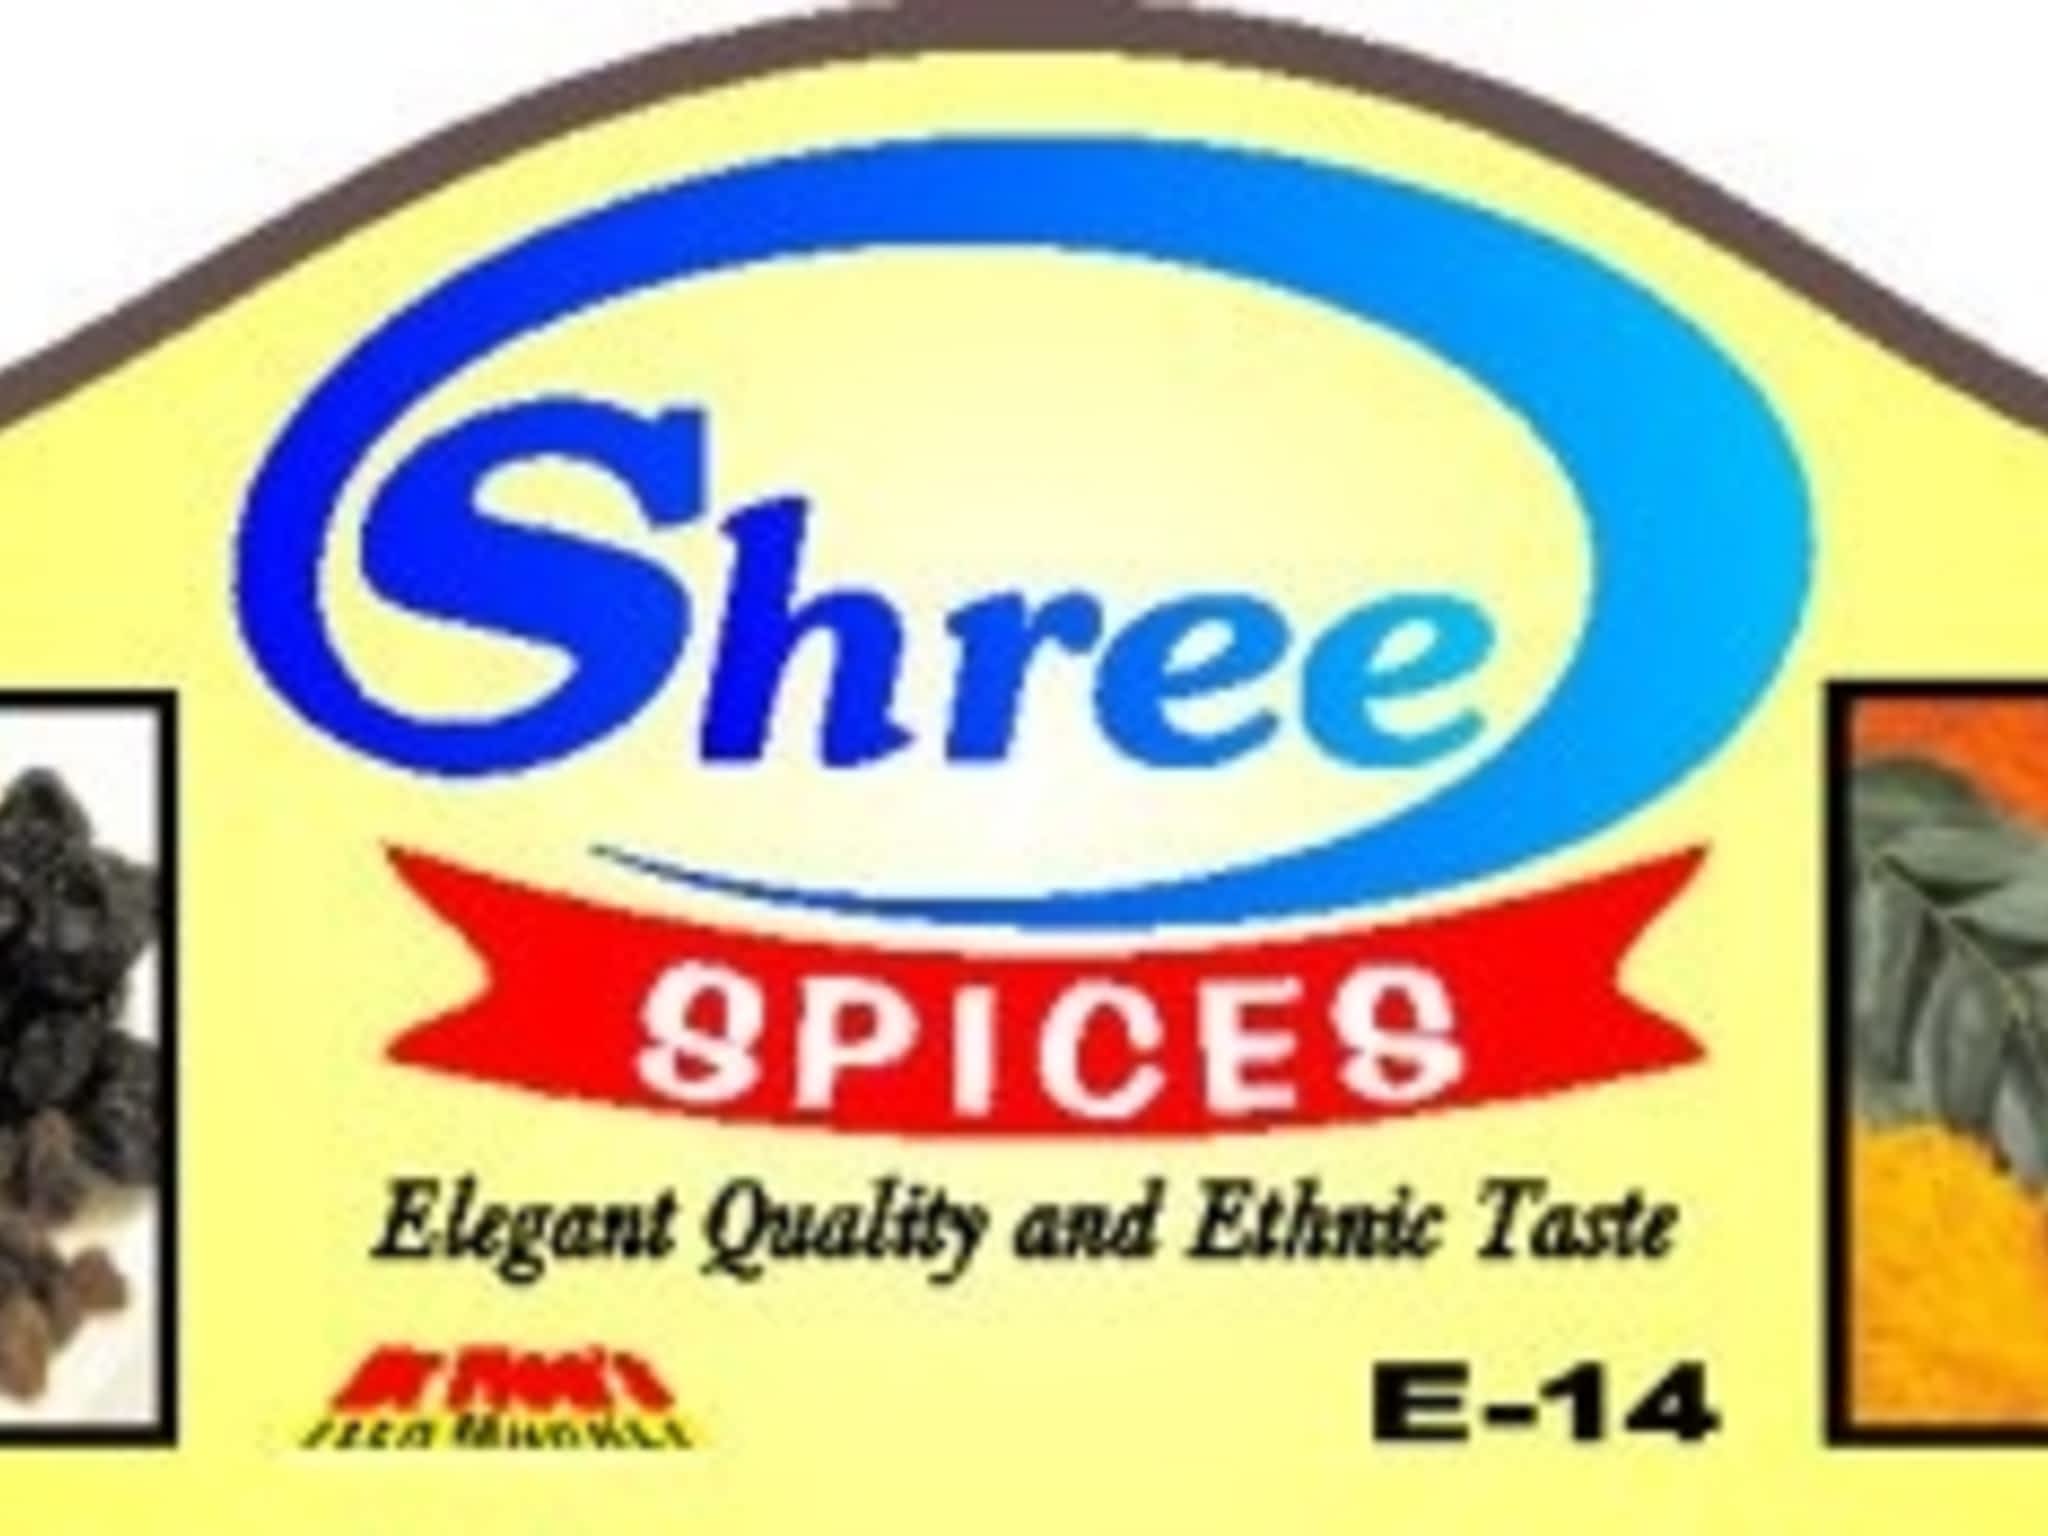 photo Shree Spices